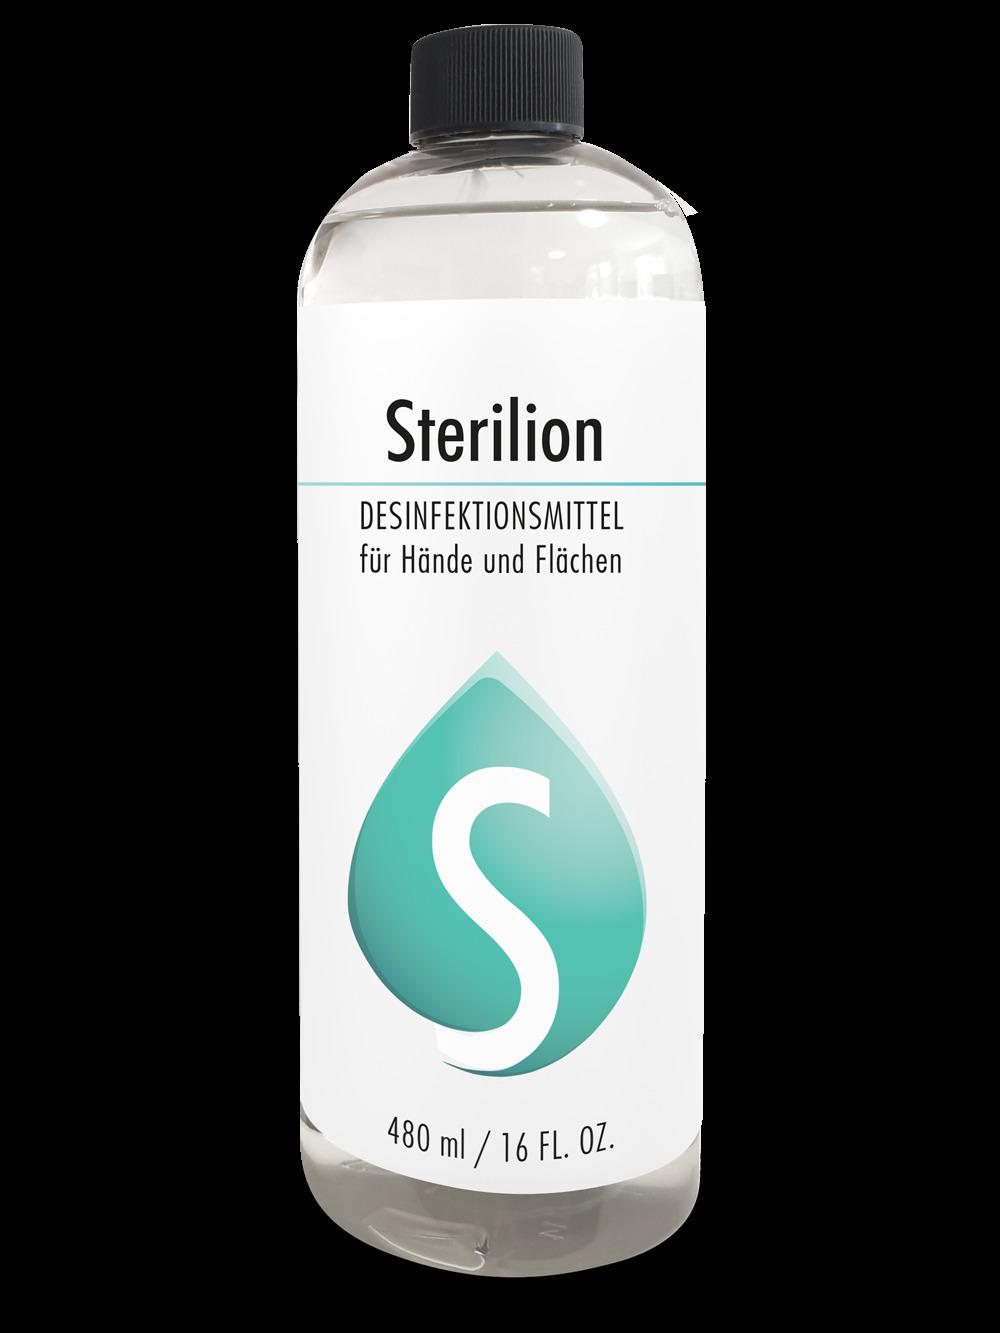 DESINFEKTIONSMITTEL Sterilion für Hände (auch für Flächen geeignet), 480 ml